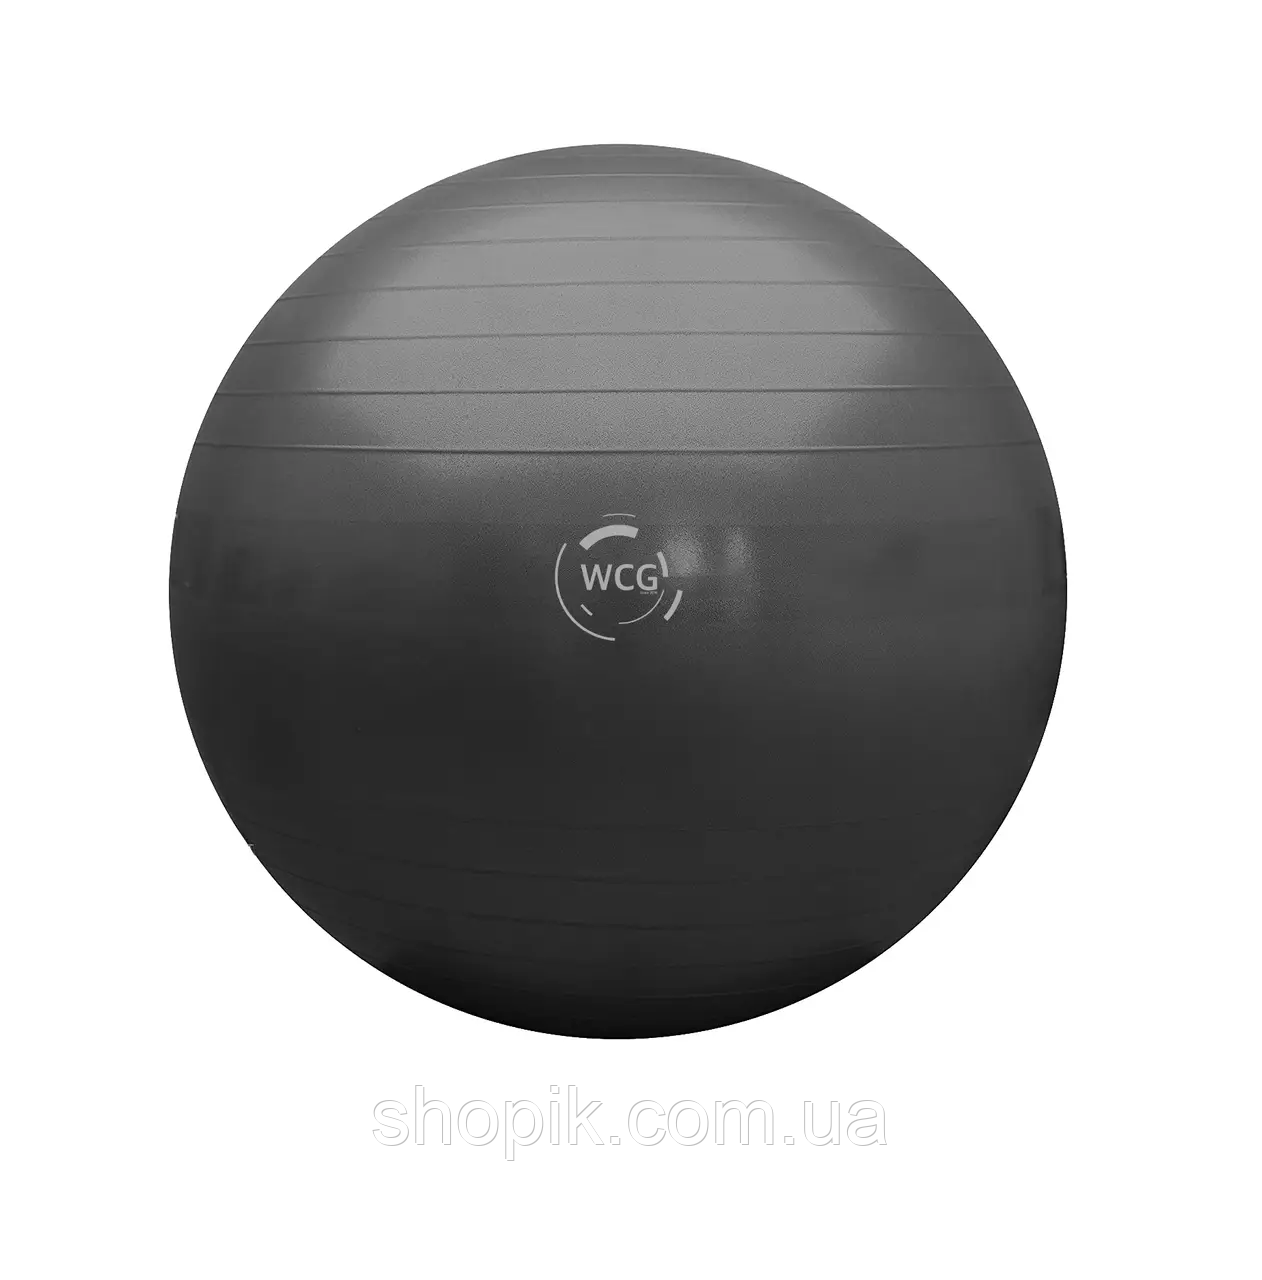 М'яч для фітнесу фітбол 85 см WCG Anti-Burst, М'яч для тренувань 300 кг (Чорний) Shopik